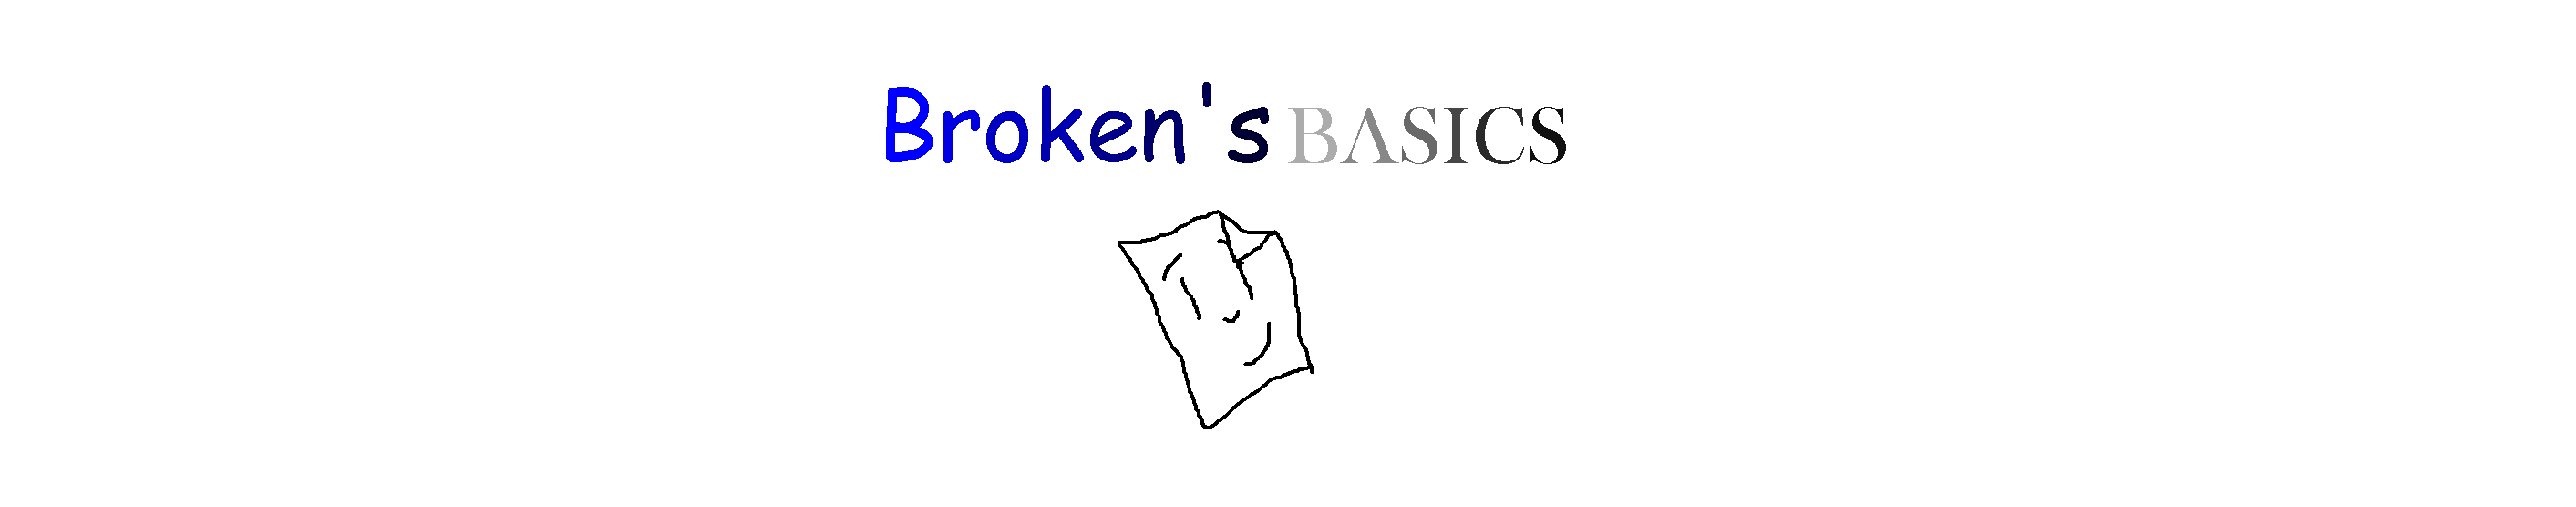 Broken's Basics 2.0